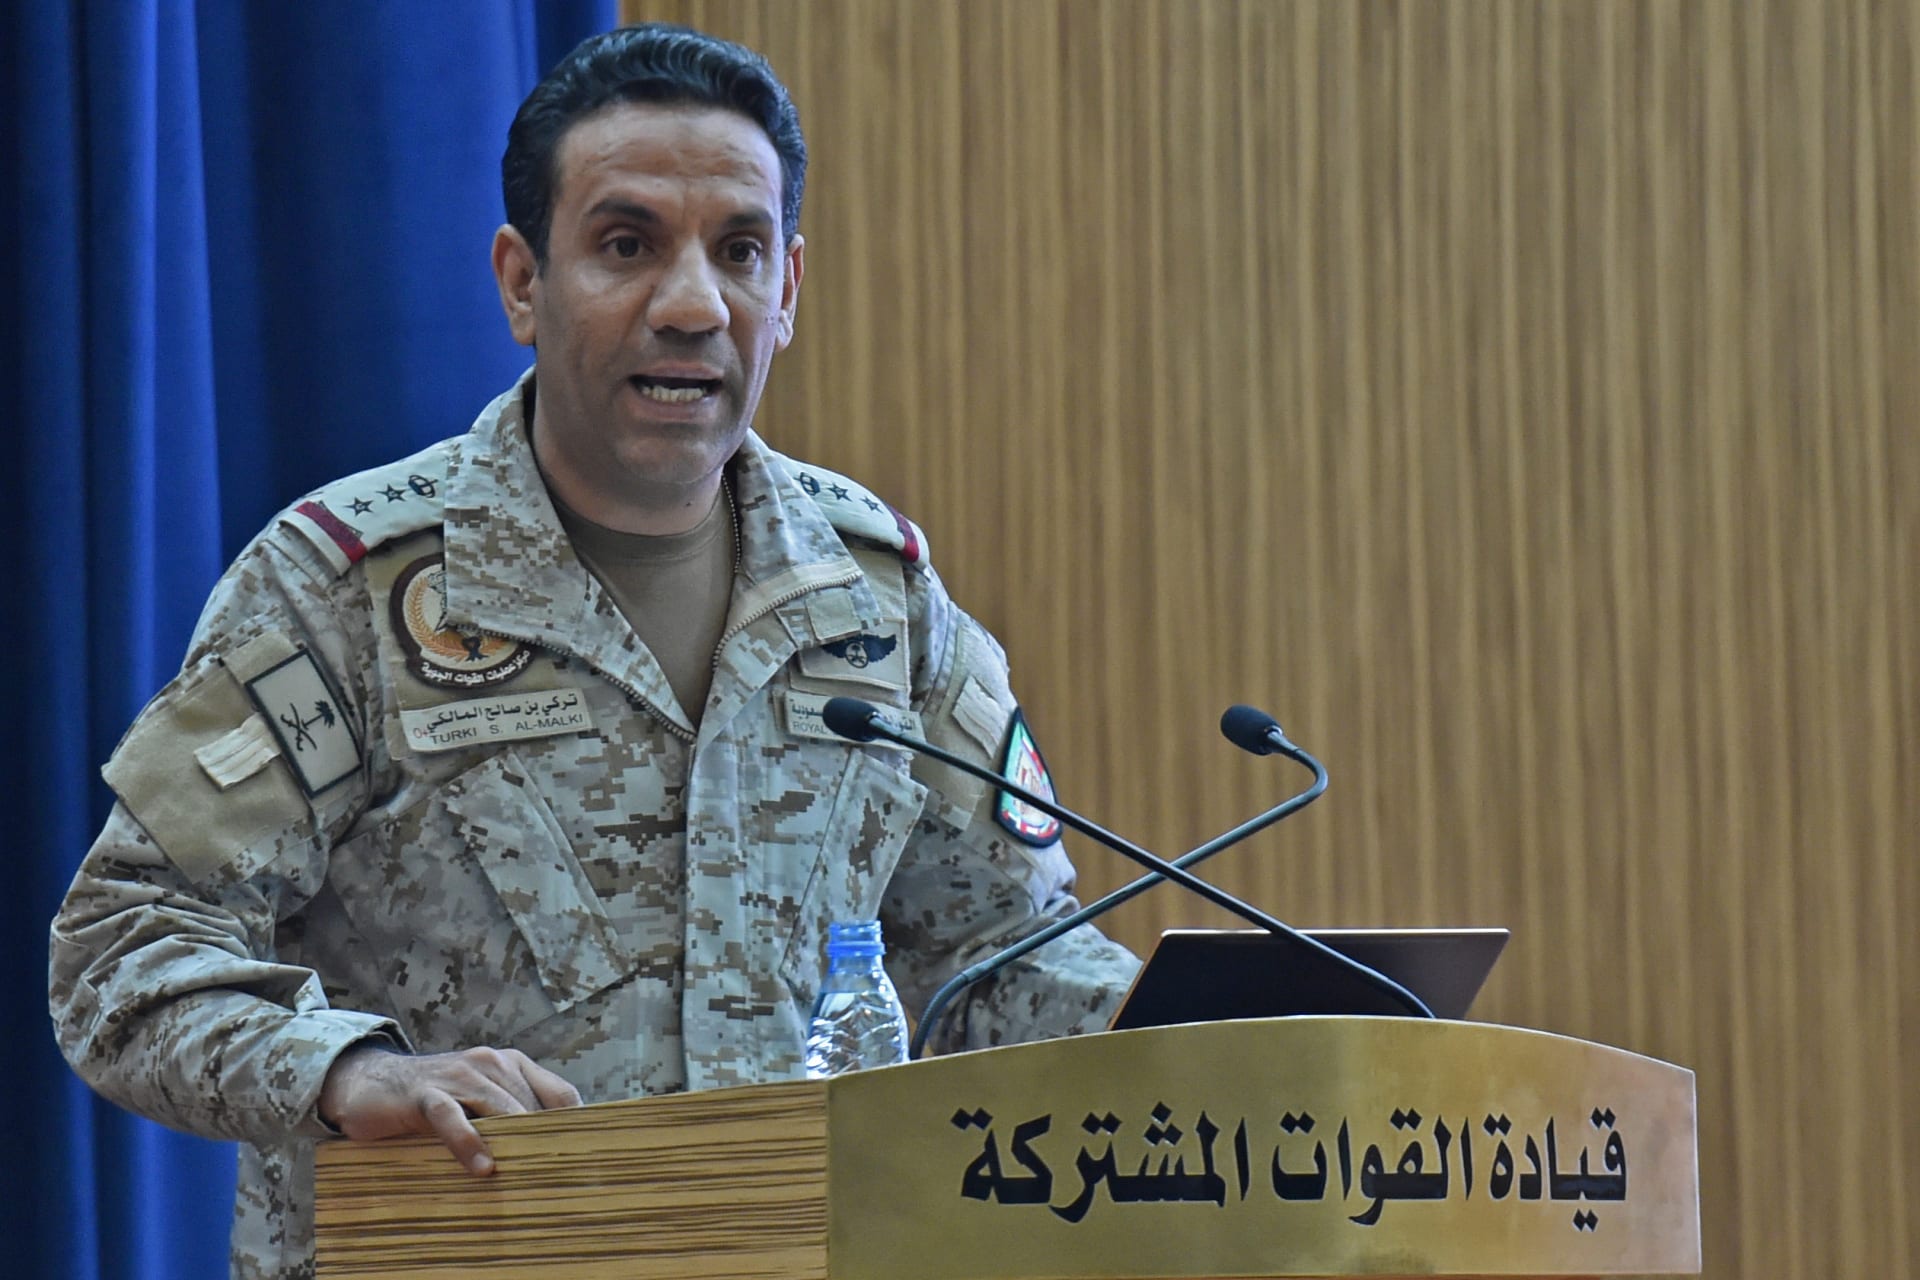  المتحدث الرسمي باسم وزارة الدفاع السعودية العميد تركي المالكي 